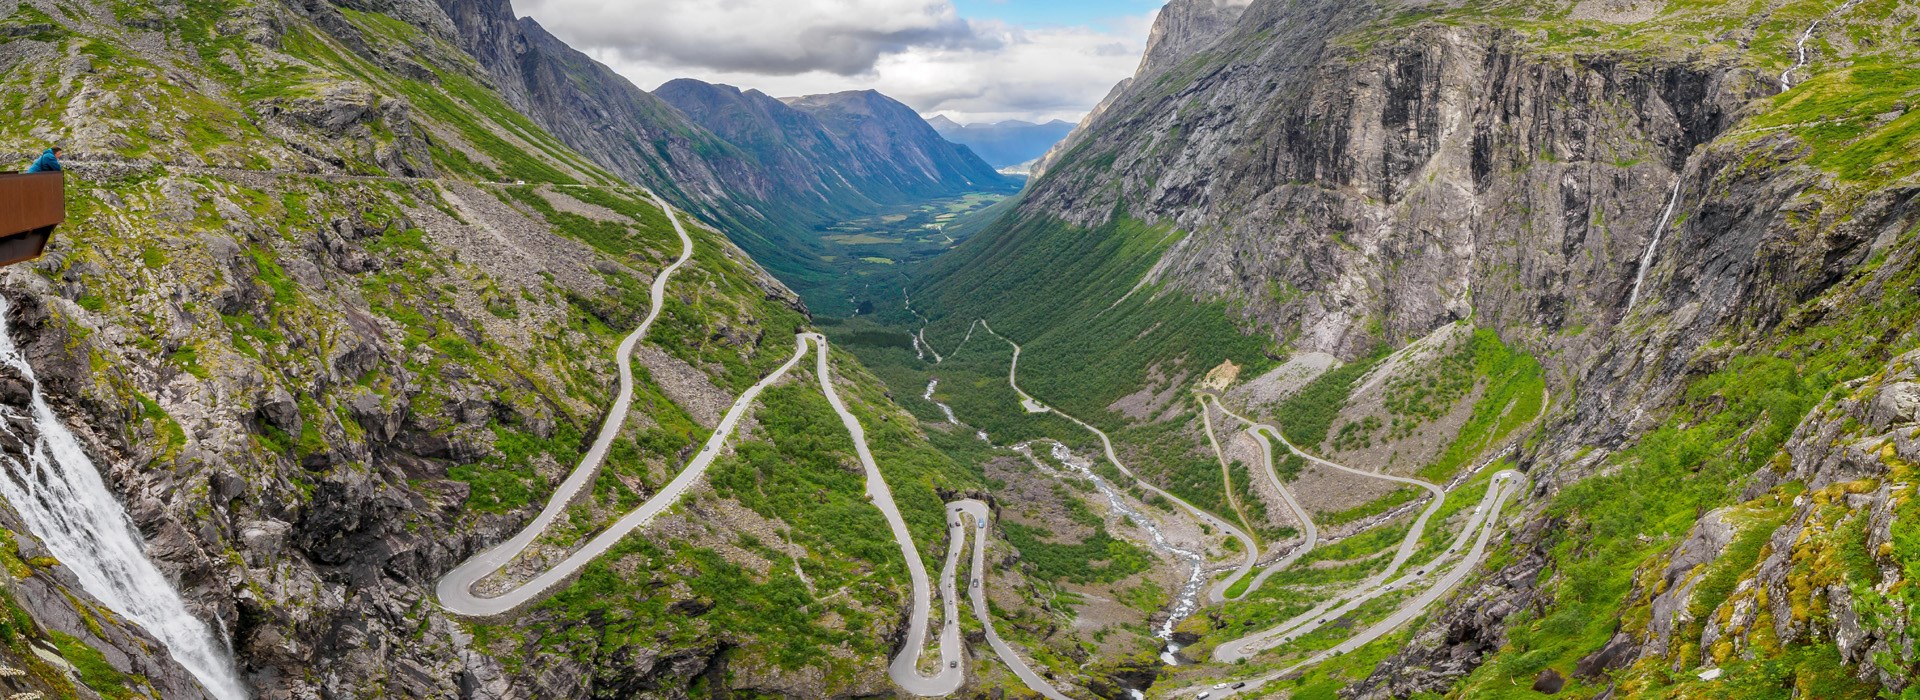 Visiter La route des aigles & des trolls - Norvège